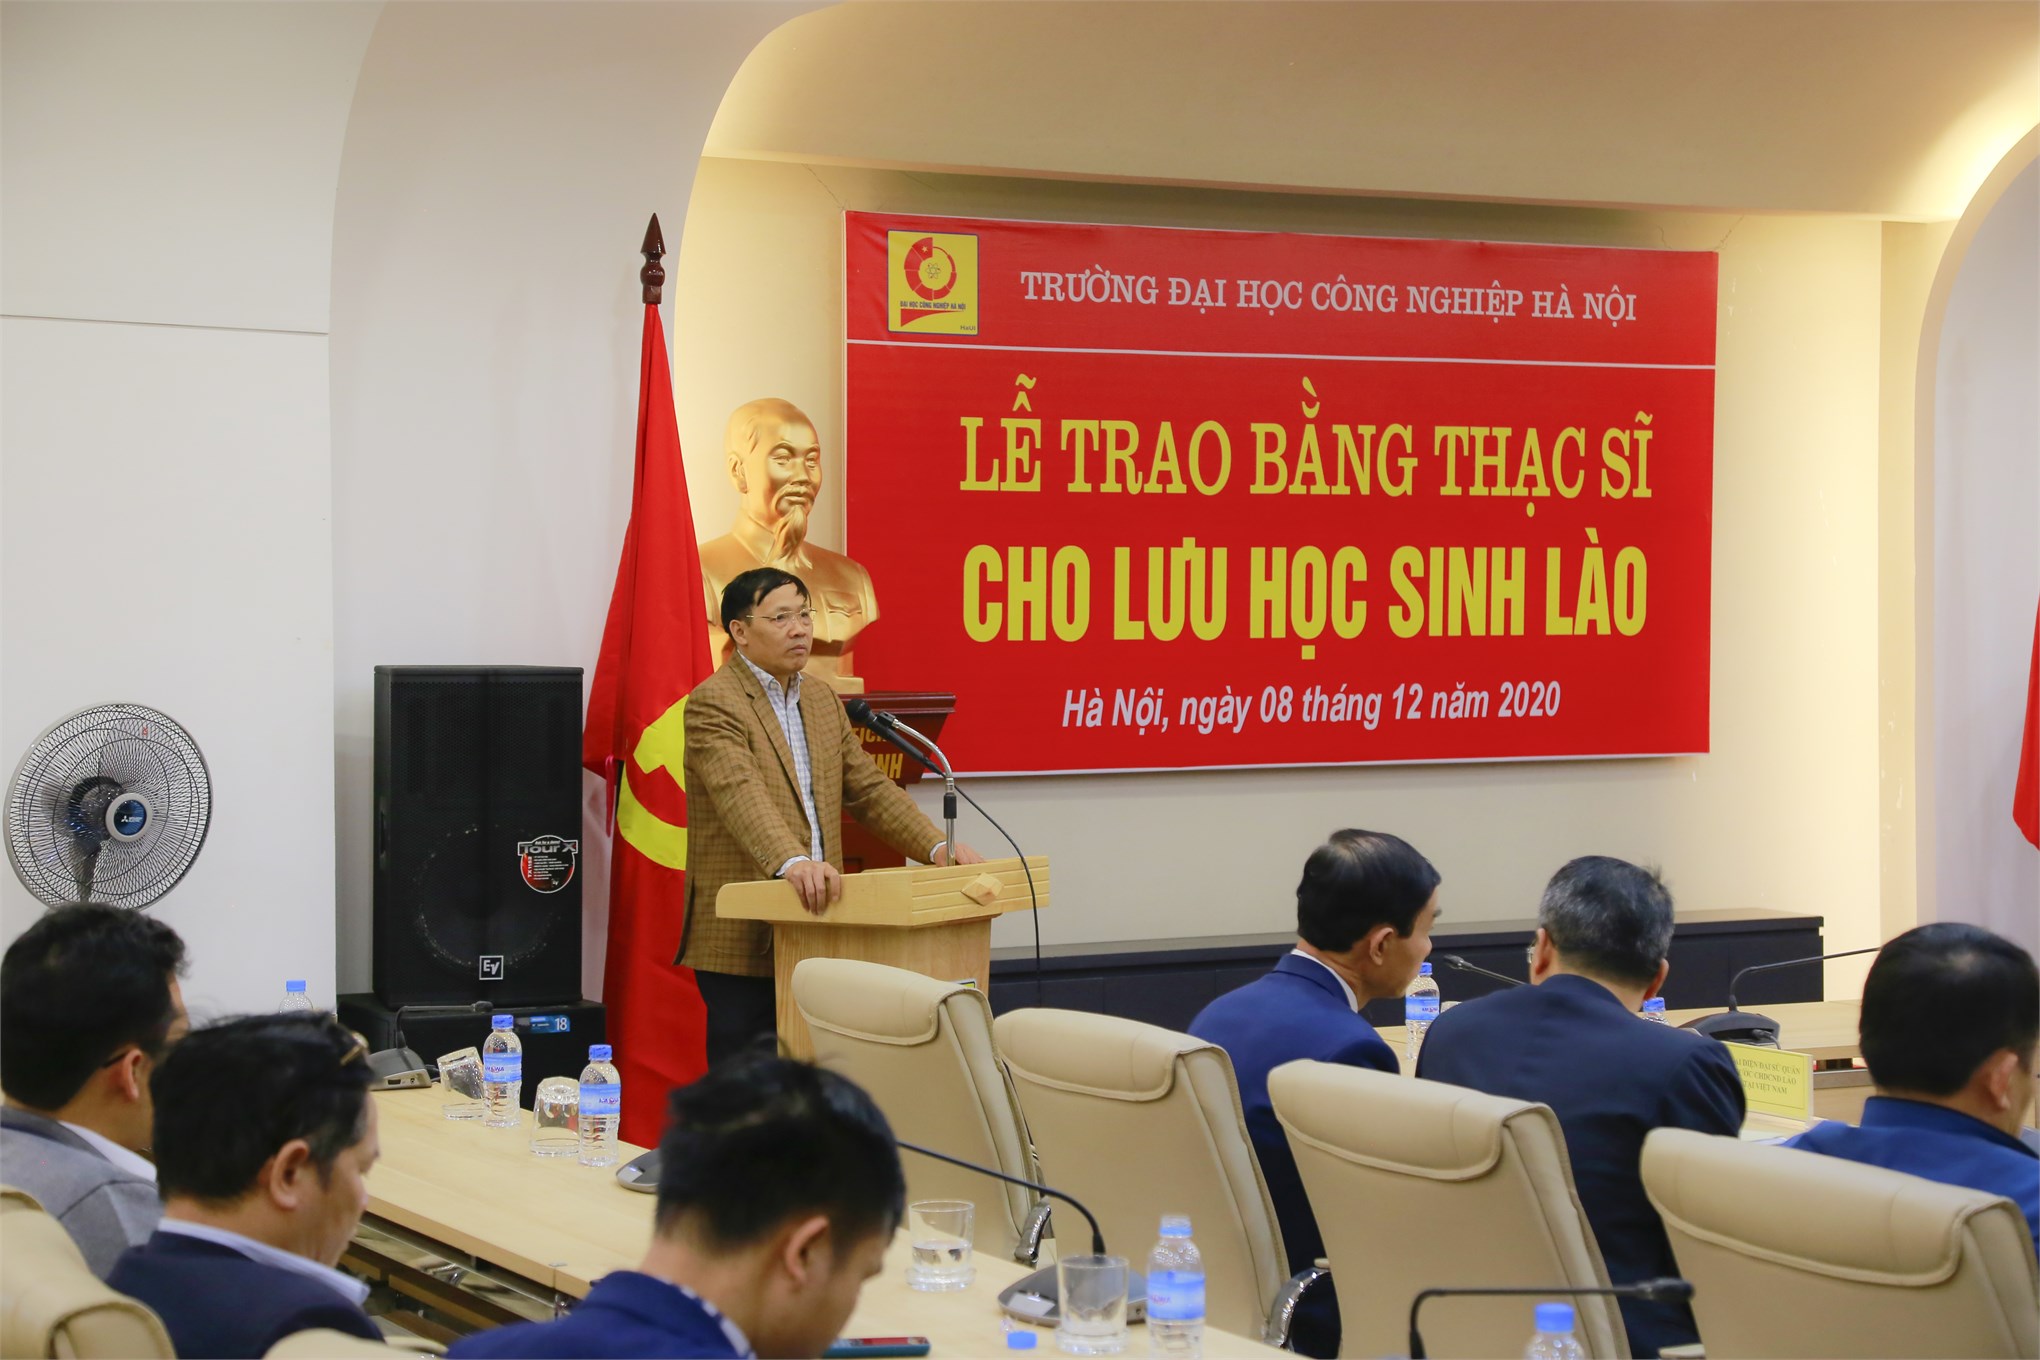 Lễ Trao bằng thạc sĩ cho Lưu học sinh Lào năm 2020